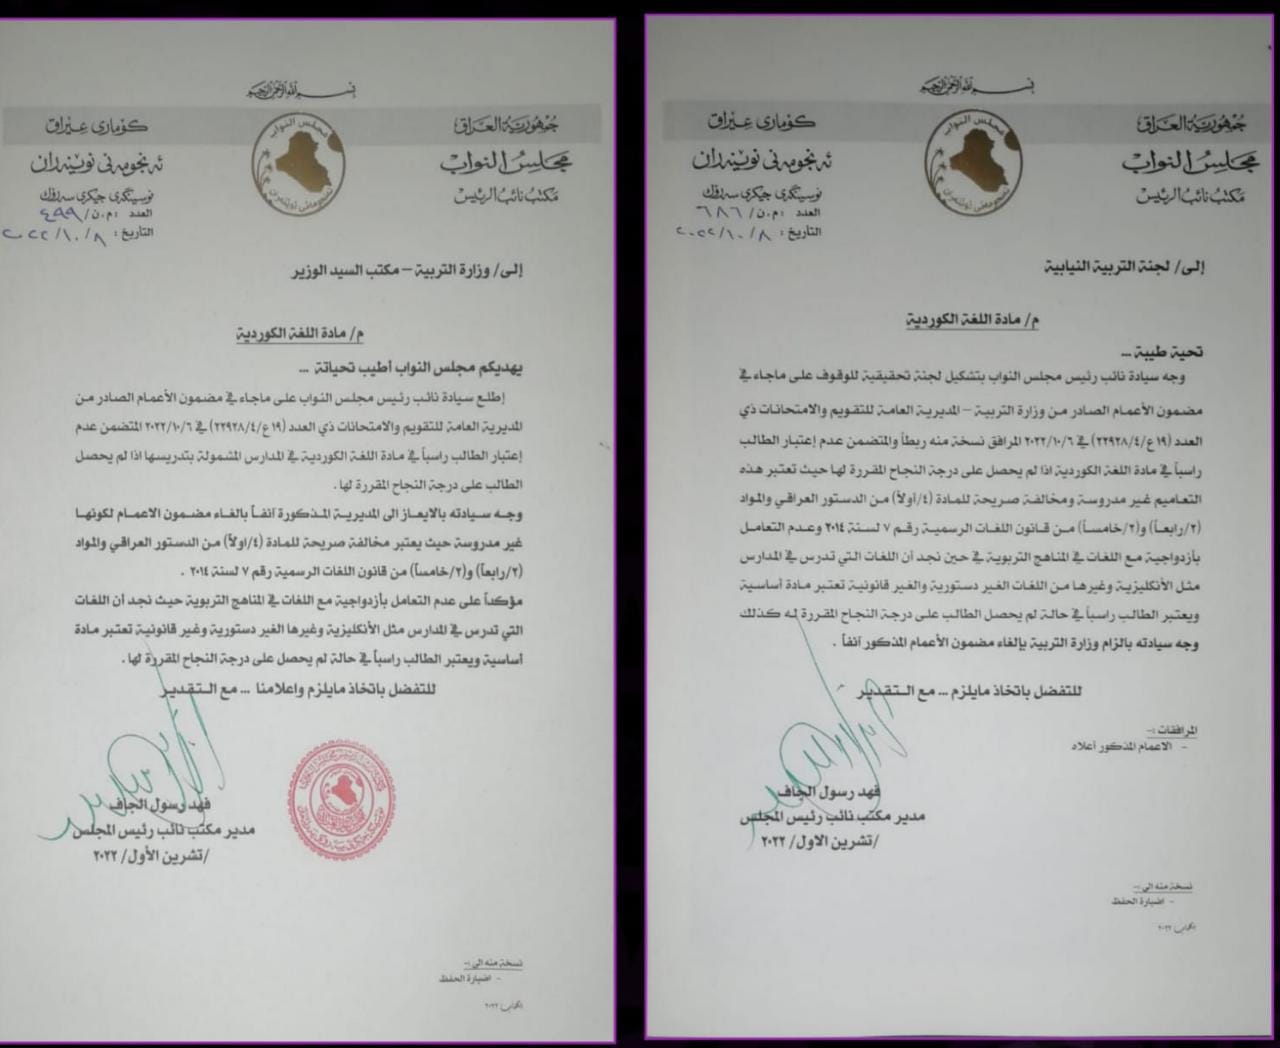 وثيقة.. البرلمان العراقي يؤشر مخالفة بـ"إعمام" لوزارة التربية بشأن اللغة الكوردية ويشكل لجنة تحقيقية